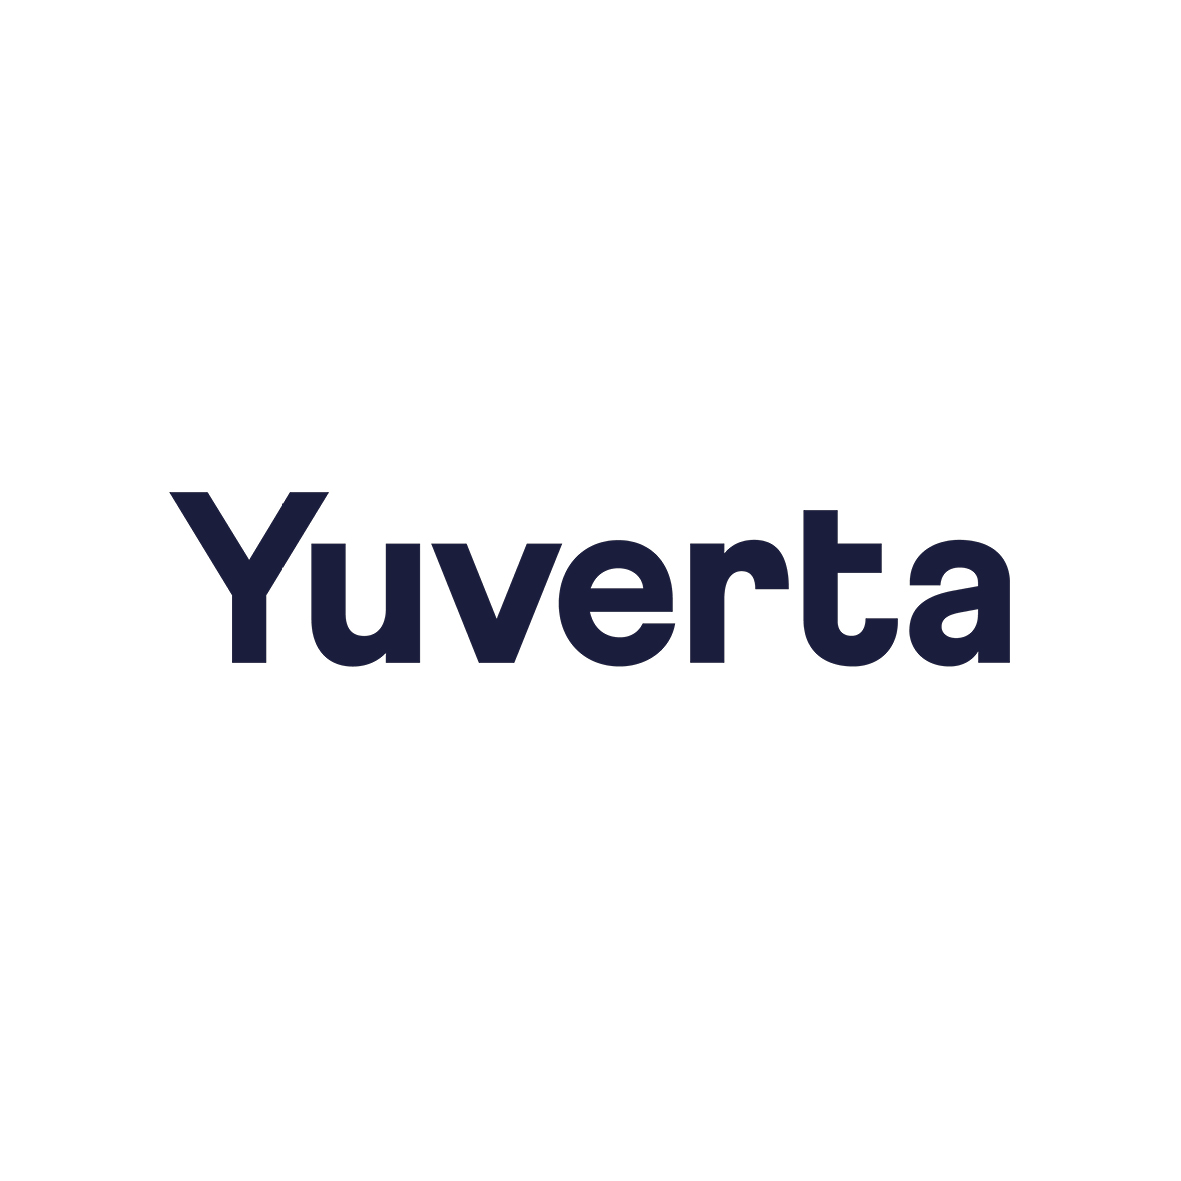 Yuverta